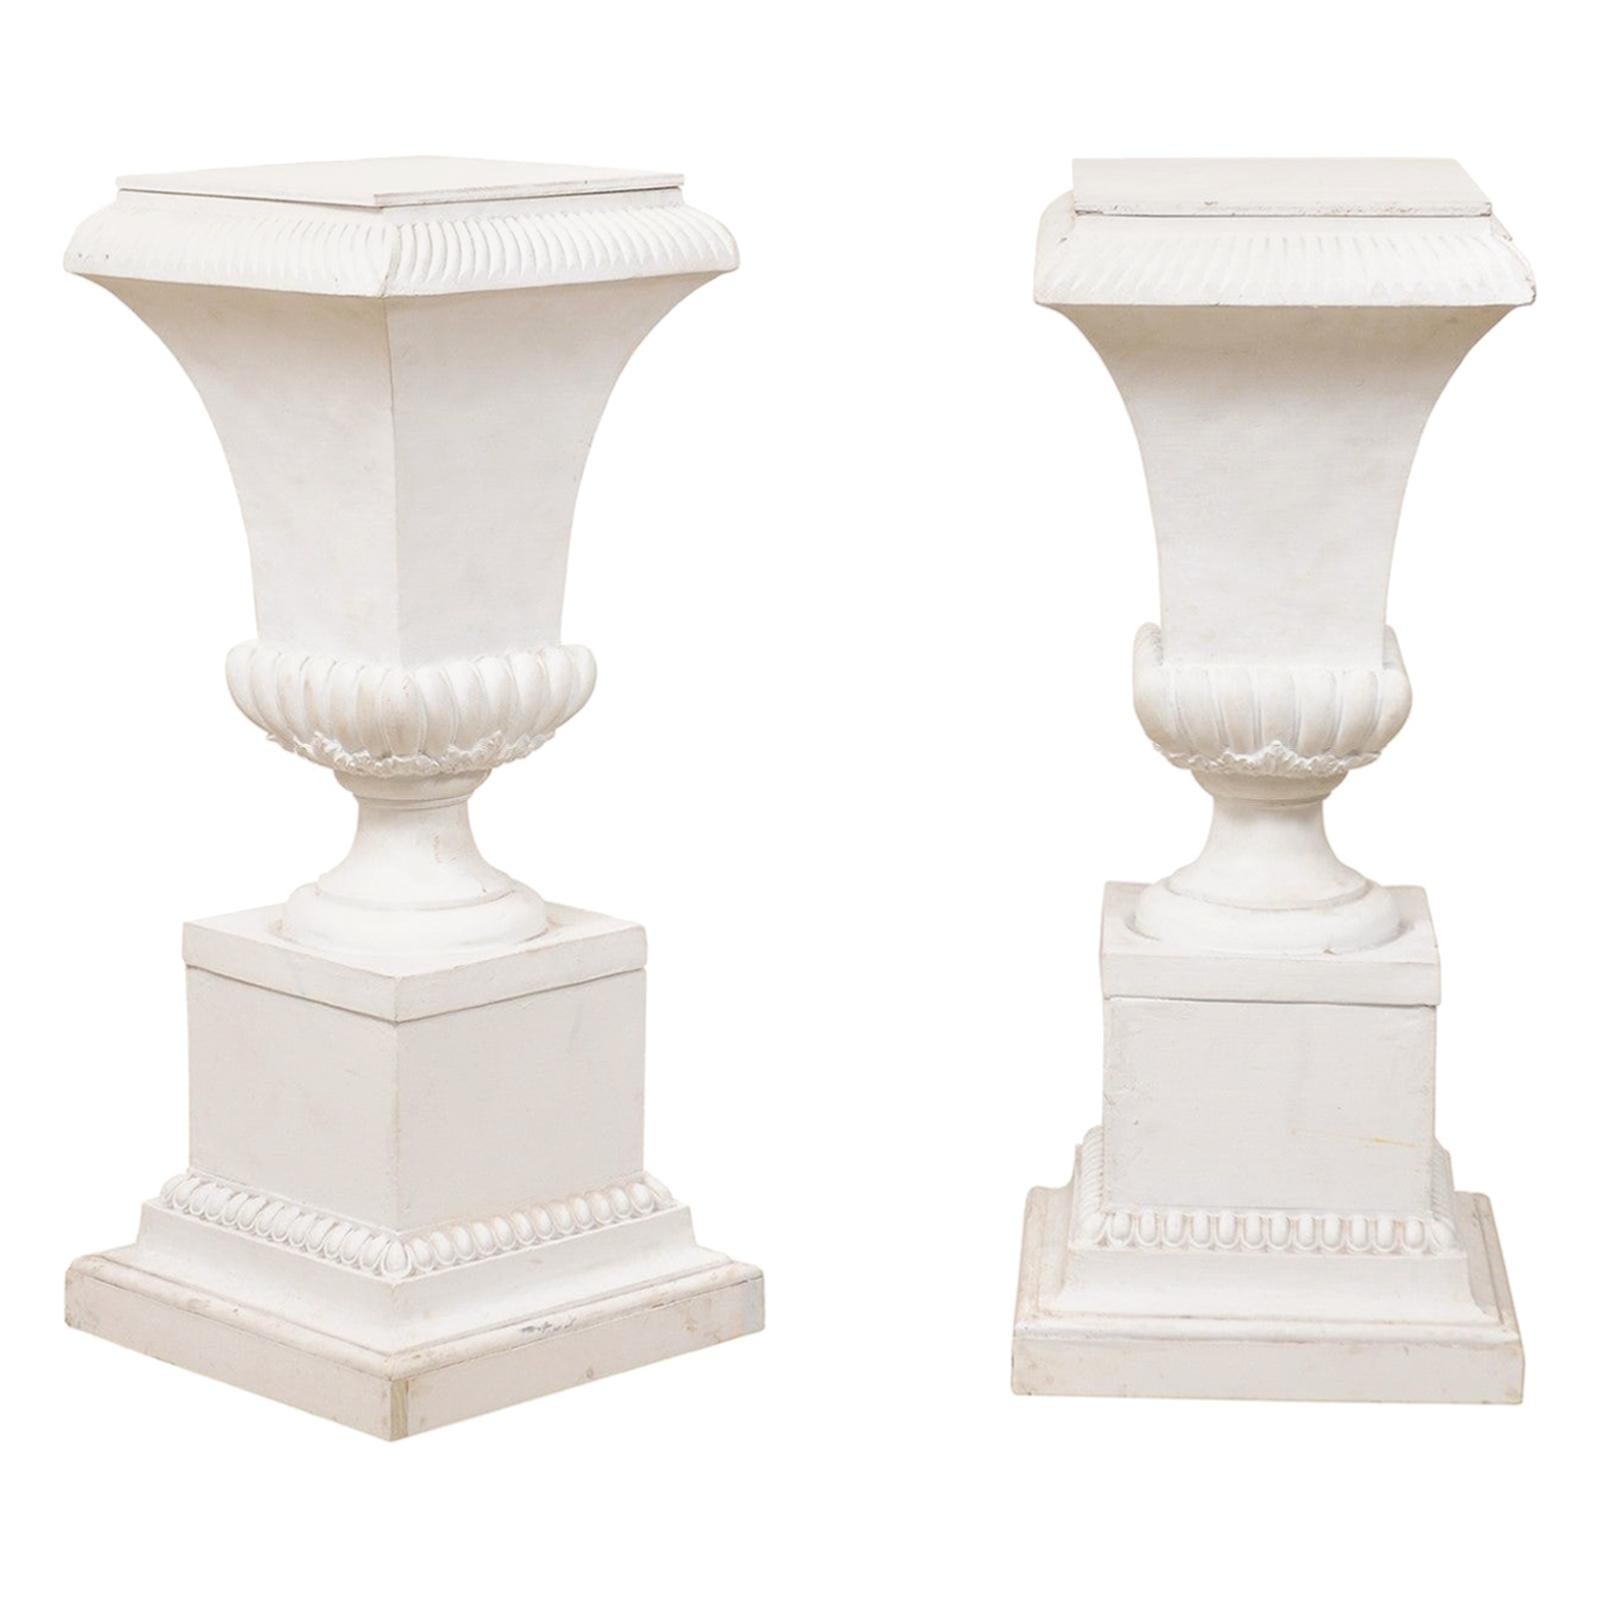 Pair of Fiberglass Urn-Shaped Pedestals, Standing